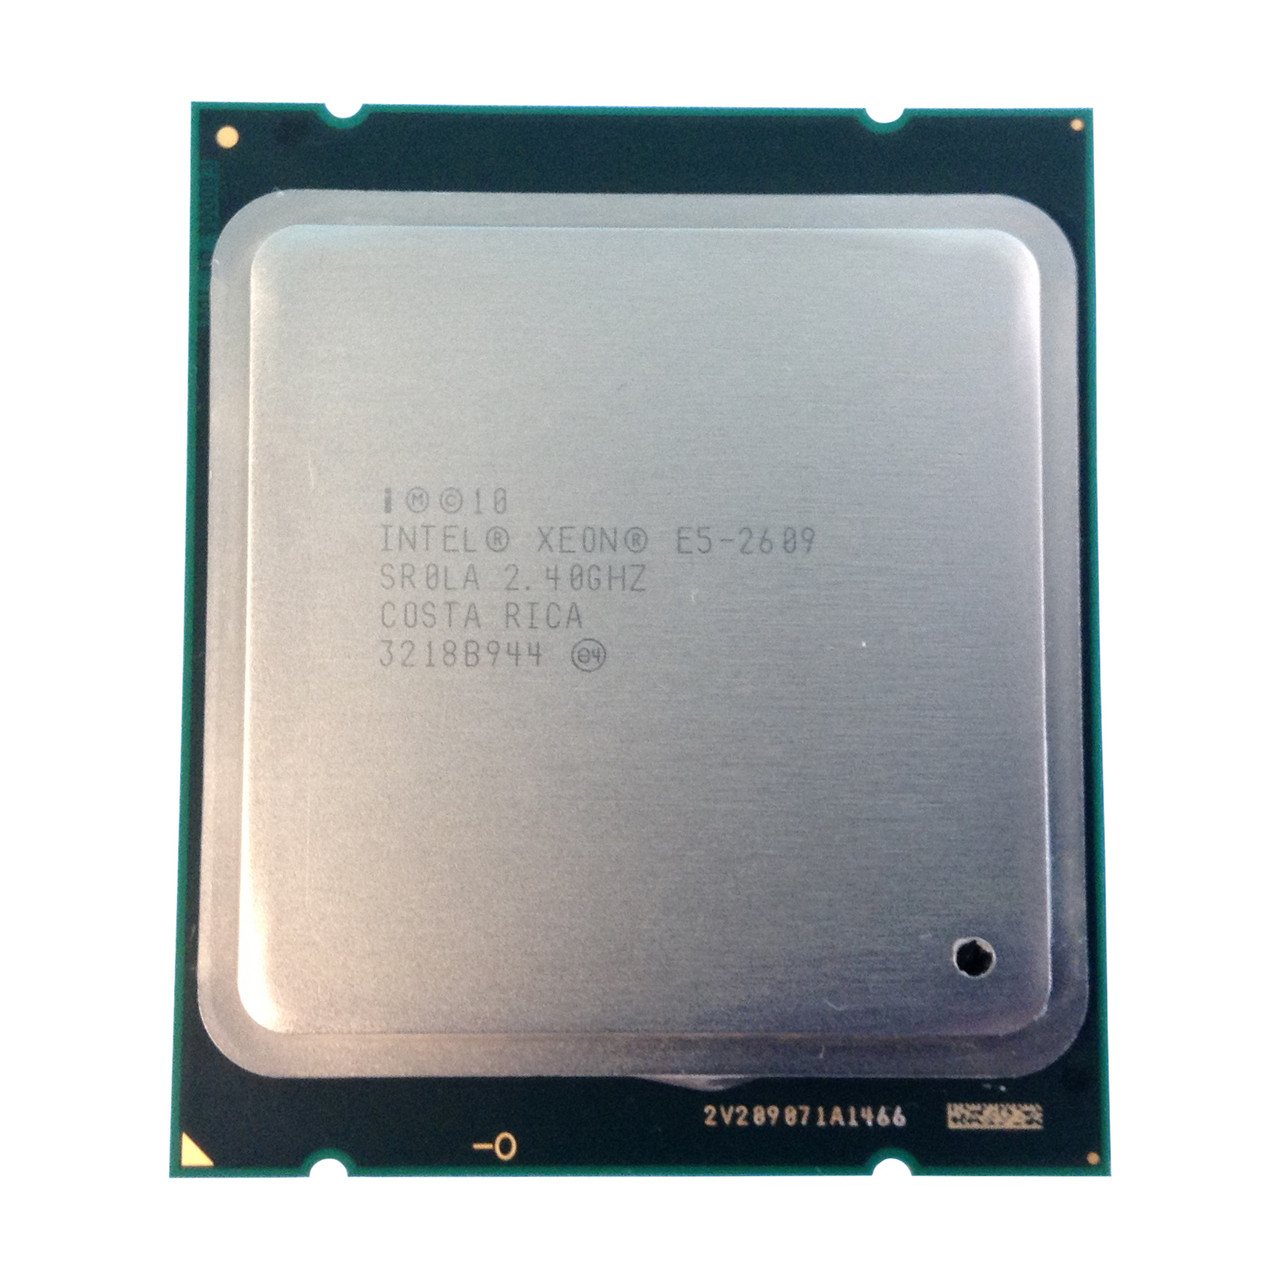 Intel Intel Xeon E5-2609 SR0LA 2.40GHz Processor CPU 